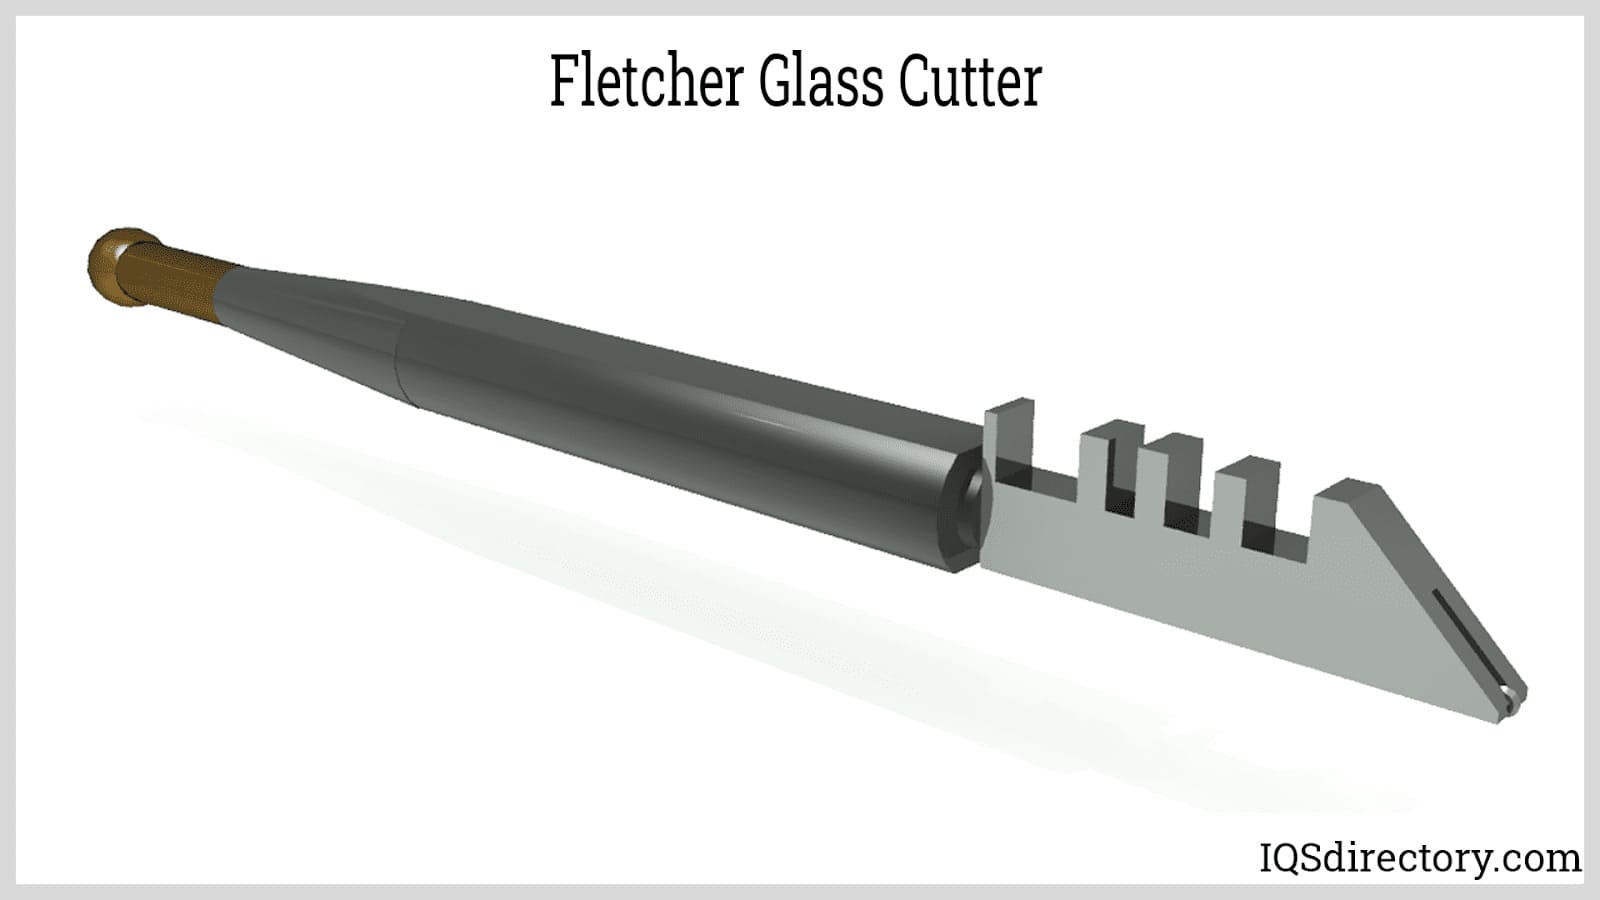 Fletcher Glass Cutter